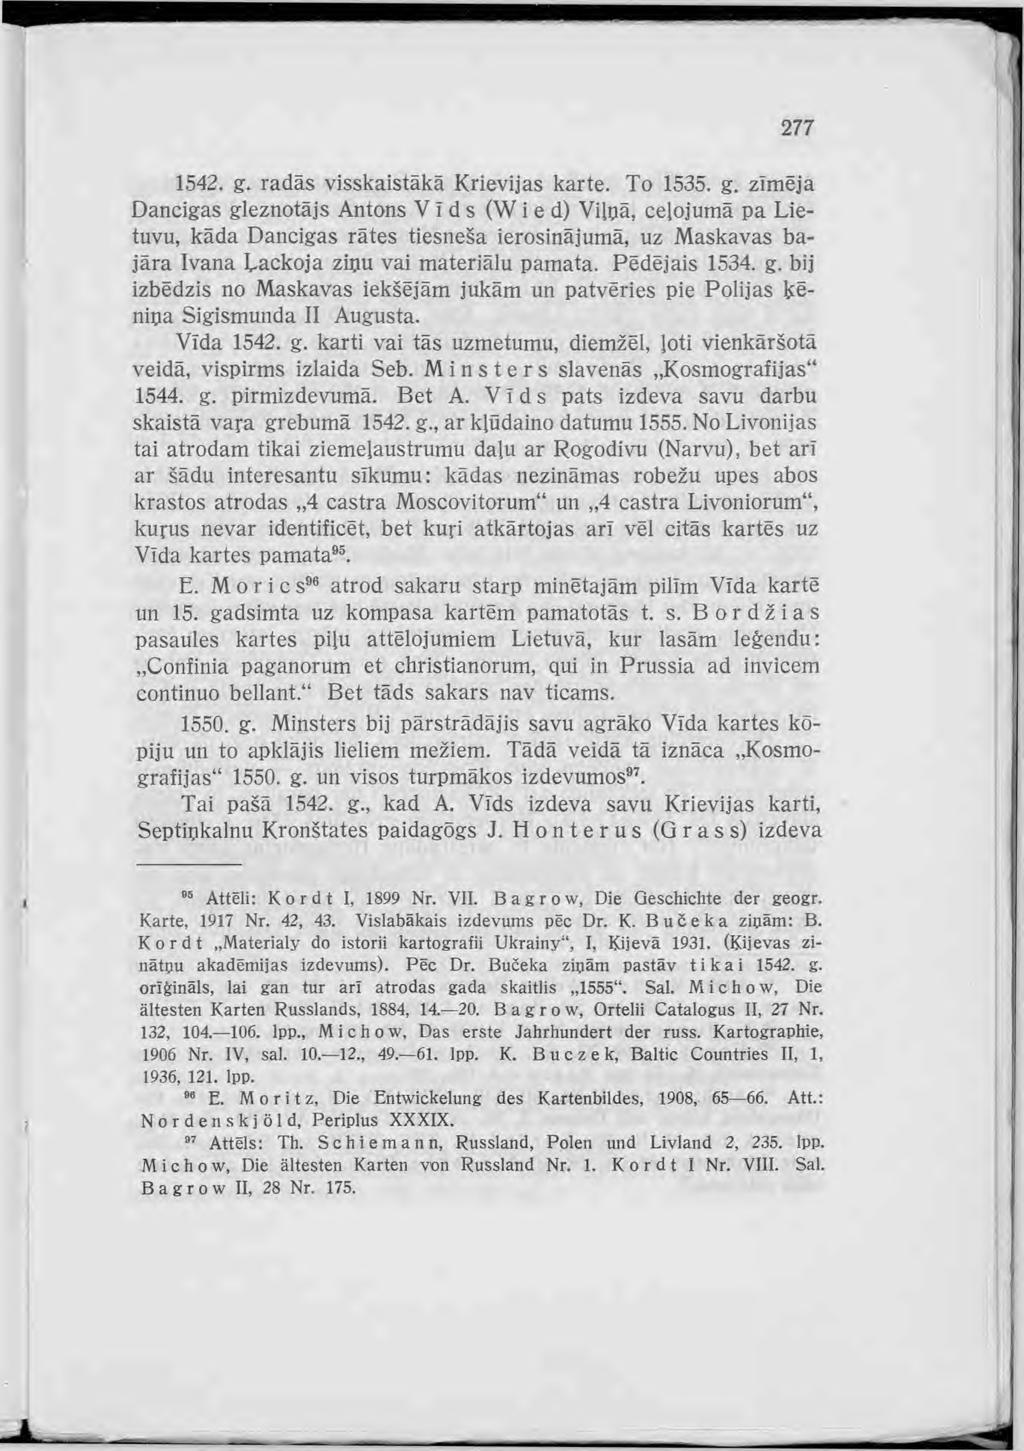 95 Attēli: Kordt I, 1899 Nr. VII. Bagrow, Die Geschichte der ge